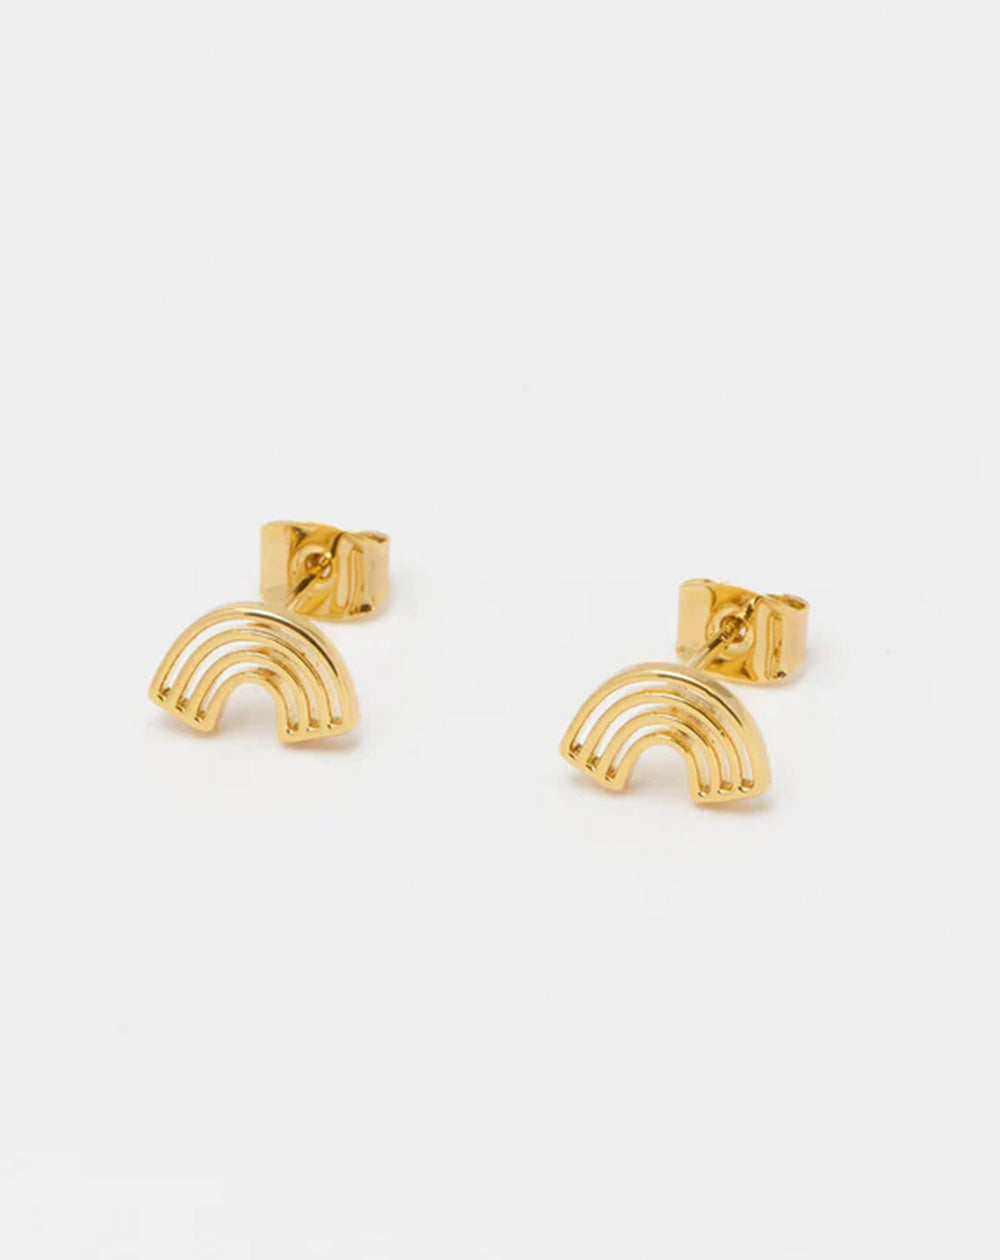 Estella Bartlett - Minimalist Cutout Rainbow Stud Earrings - Gold Plated